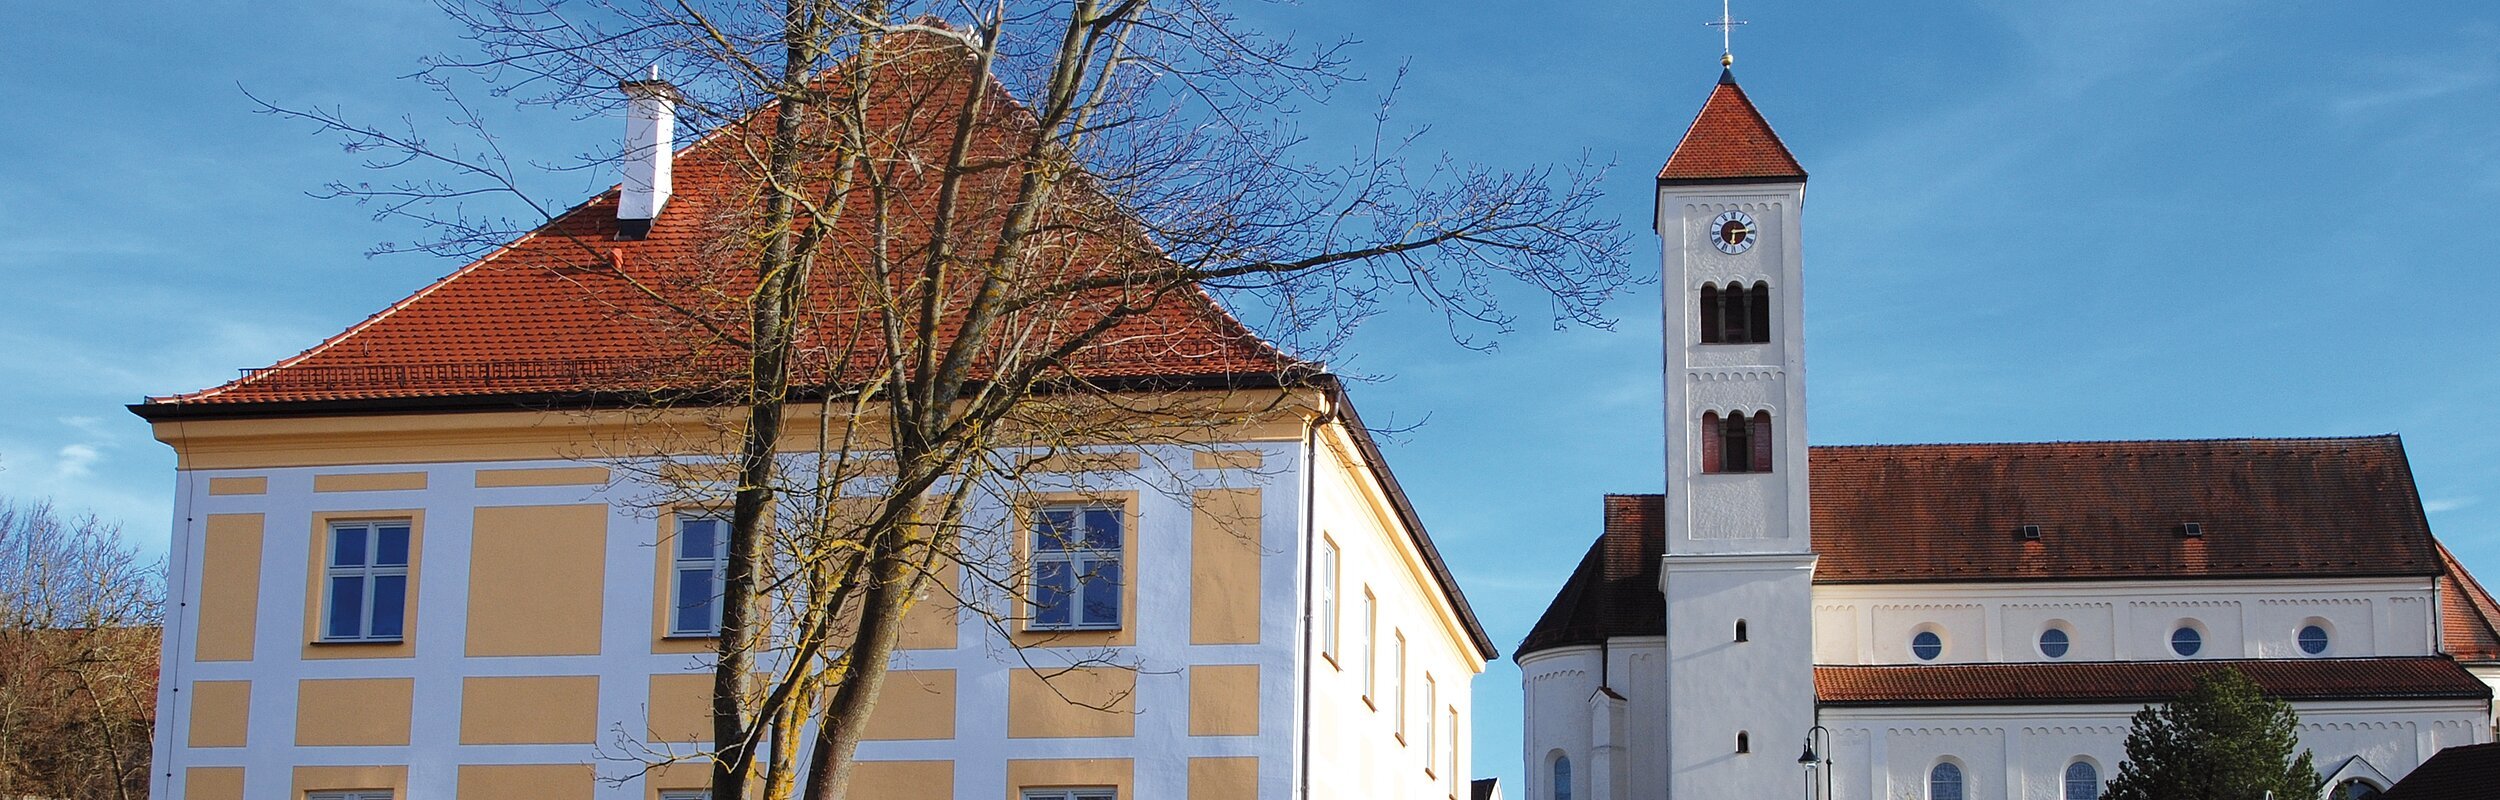 Gemeindehaus und Kirche in Tagmersheim